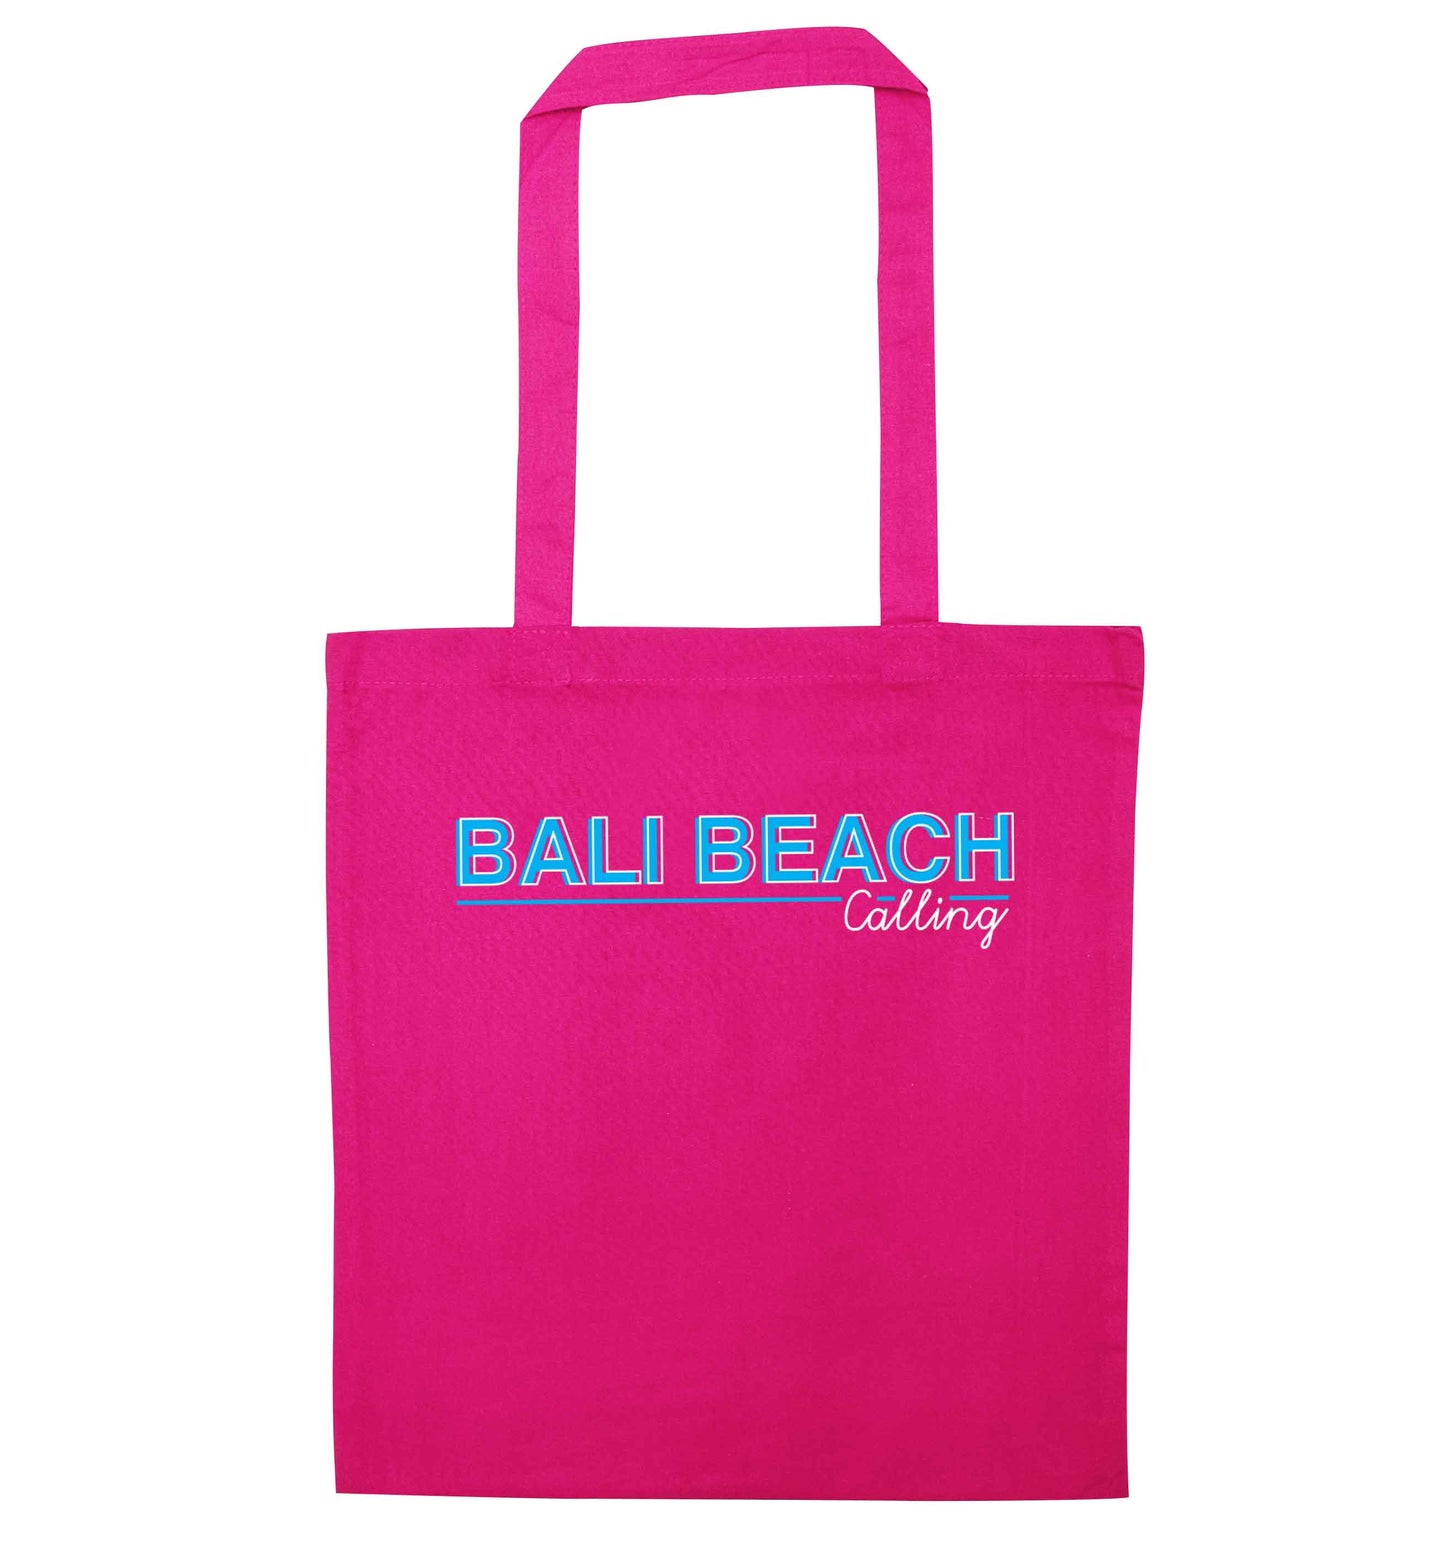 Bali beach calling pink tote bag